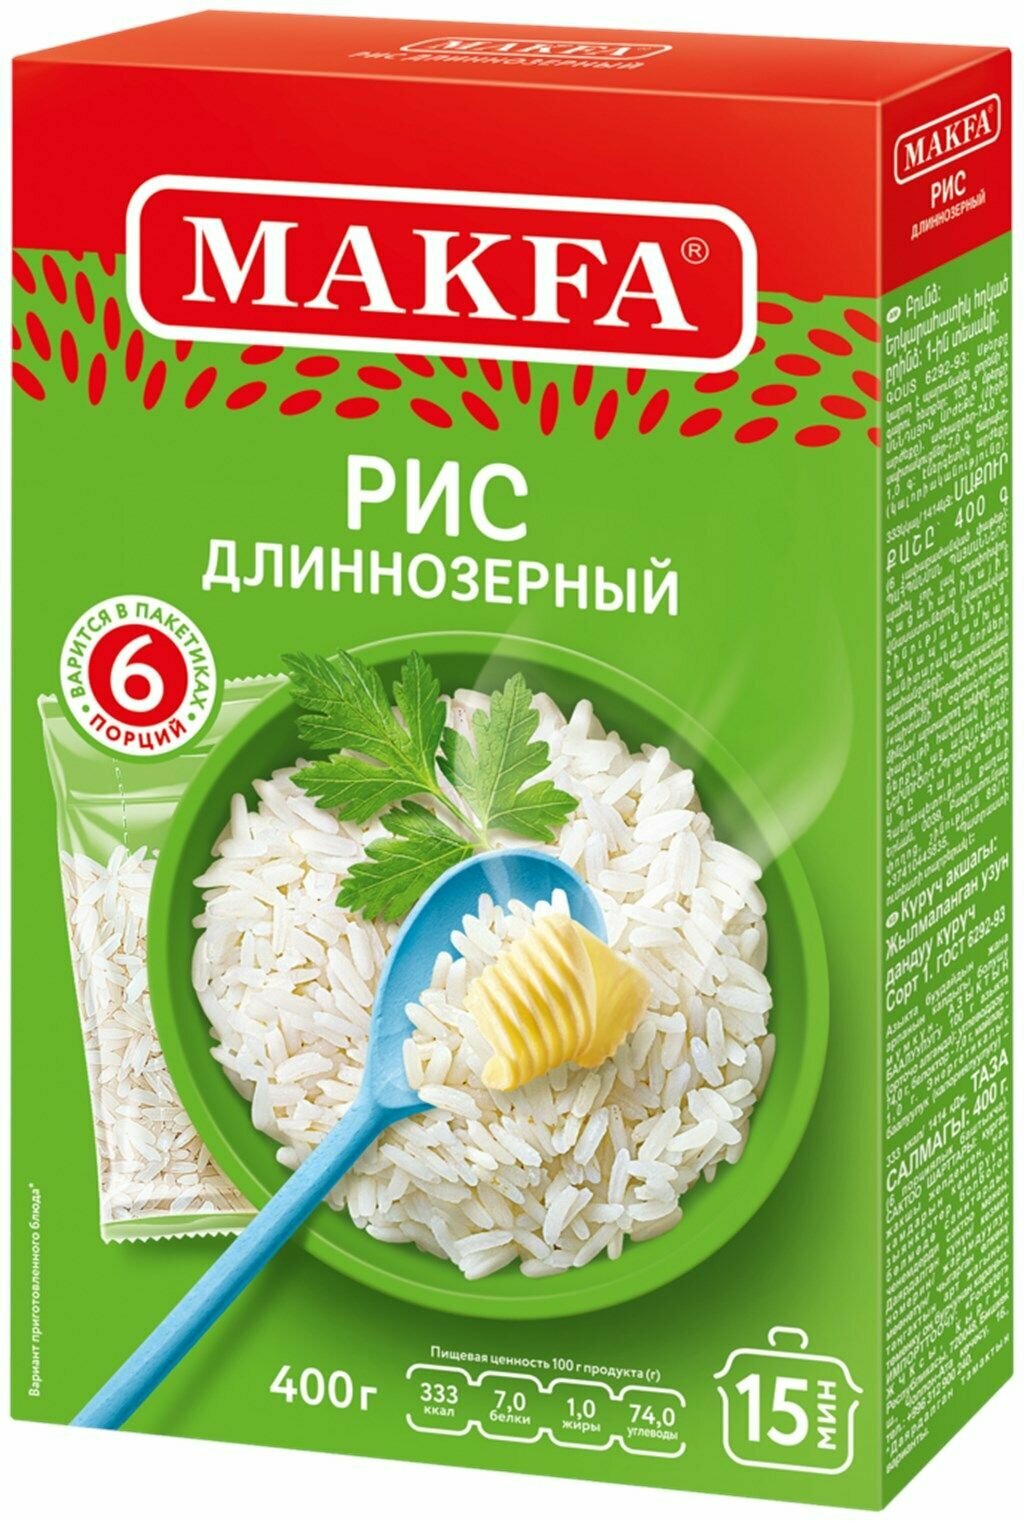 Рис длиннозерный MAKFA, в пакетиках, 400 г - 5 шт. - фотография № 2